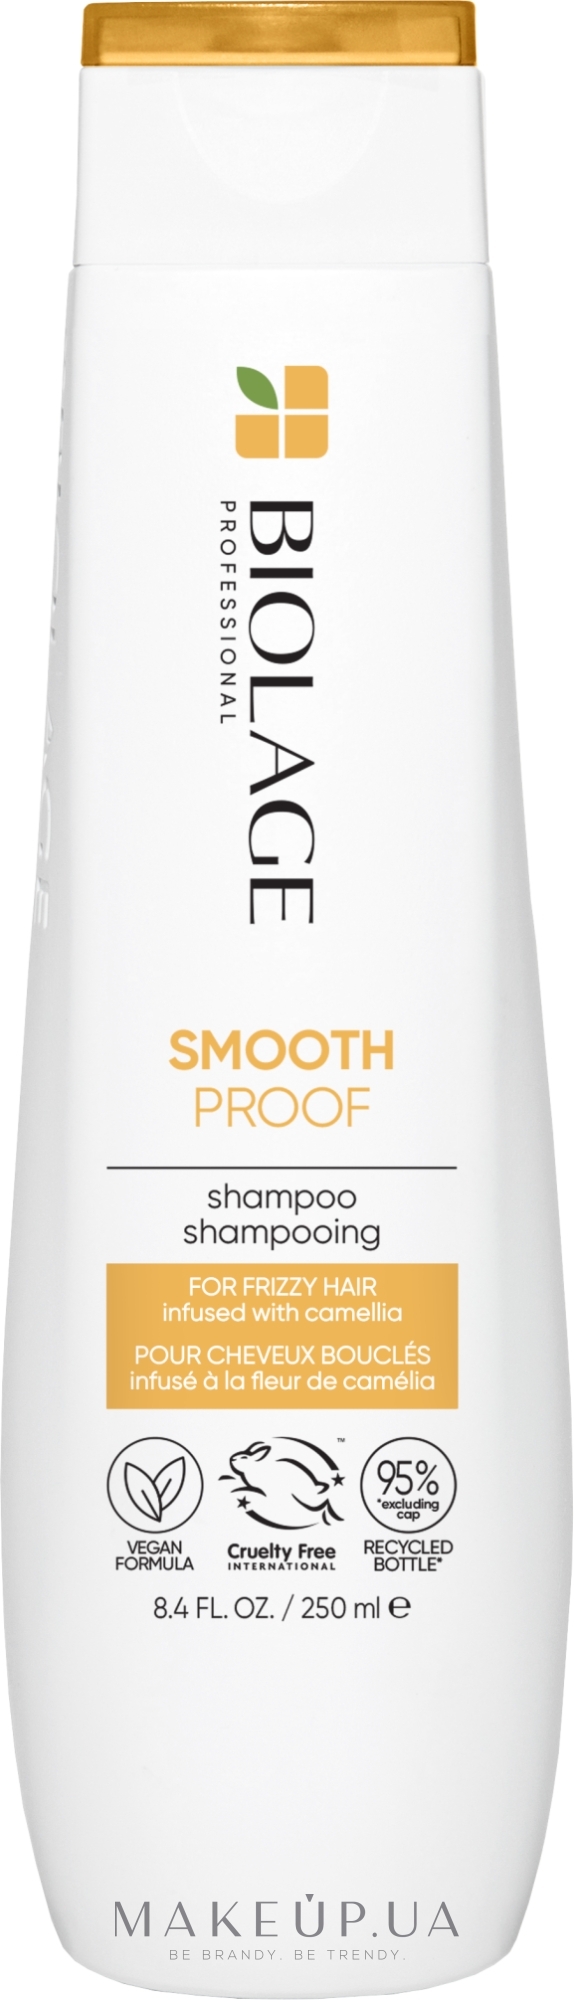 Шампунь для разглаживания волос - Biolage Smoothproof Shampoo — фото 250ml